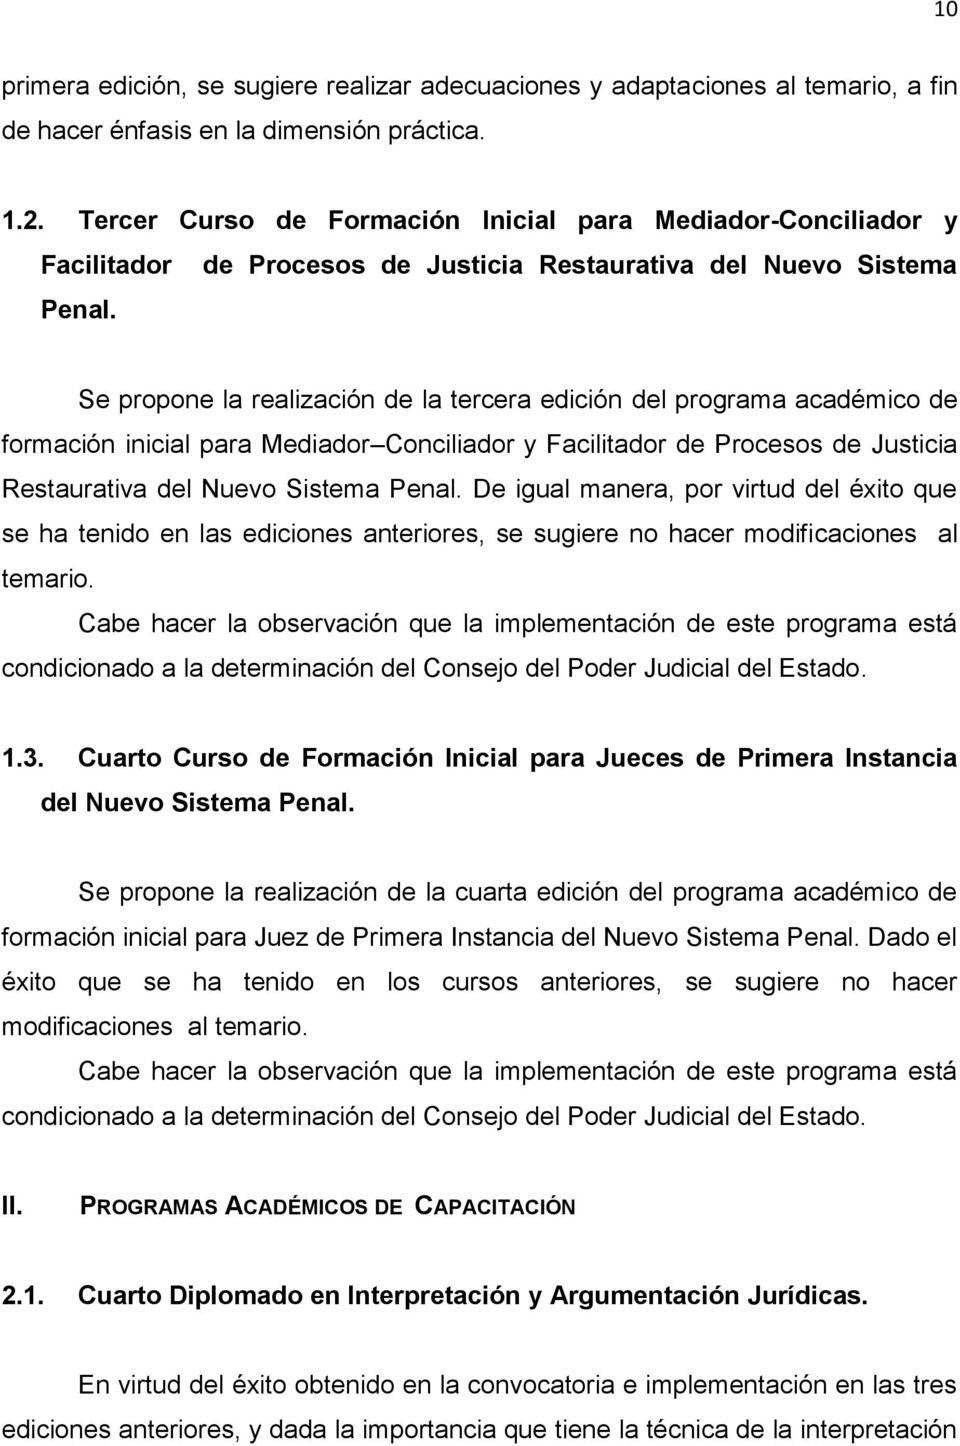 Se propone la realización de la tercera edición del programa académico de formación inicial para Mediador Conciliador y Facilitador de Procesos de Justicia Restaurativa del Nuevo Sistema Penal.